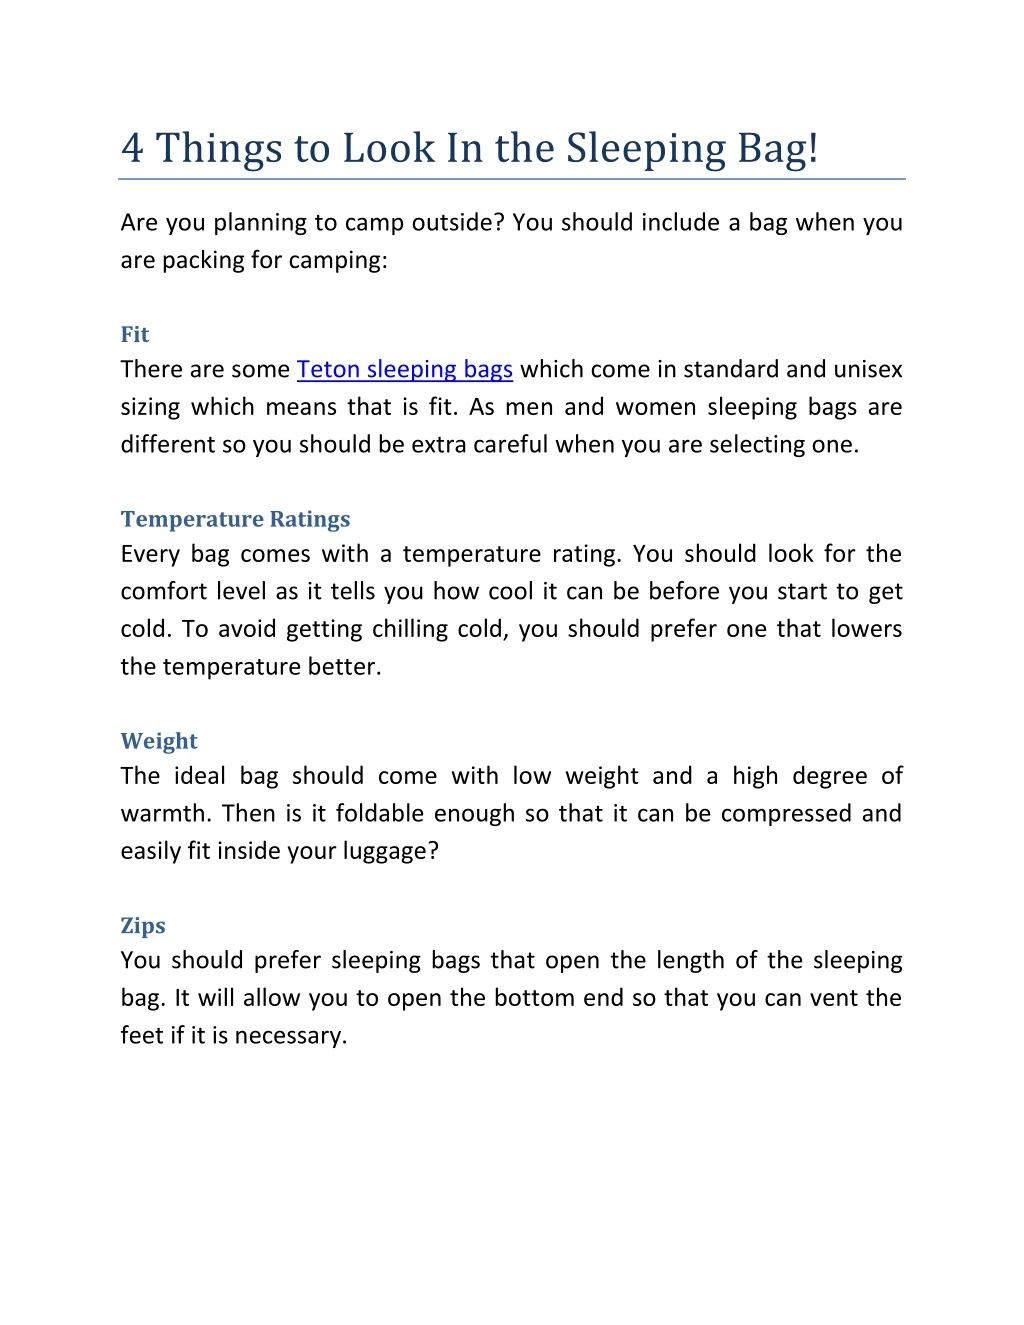 4 things to look in the sleeping bag